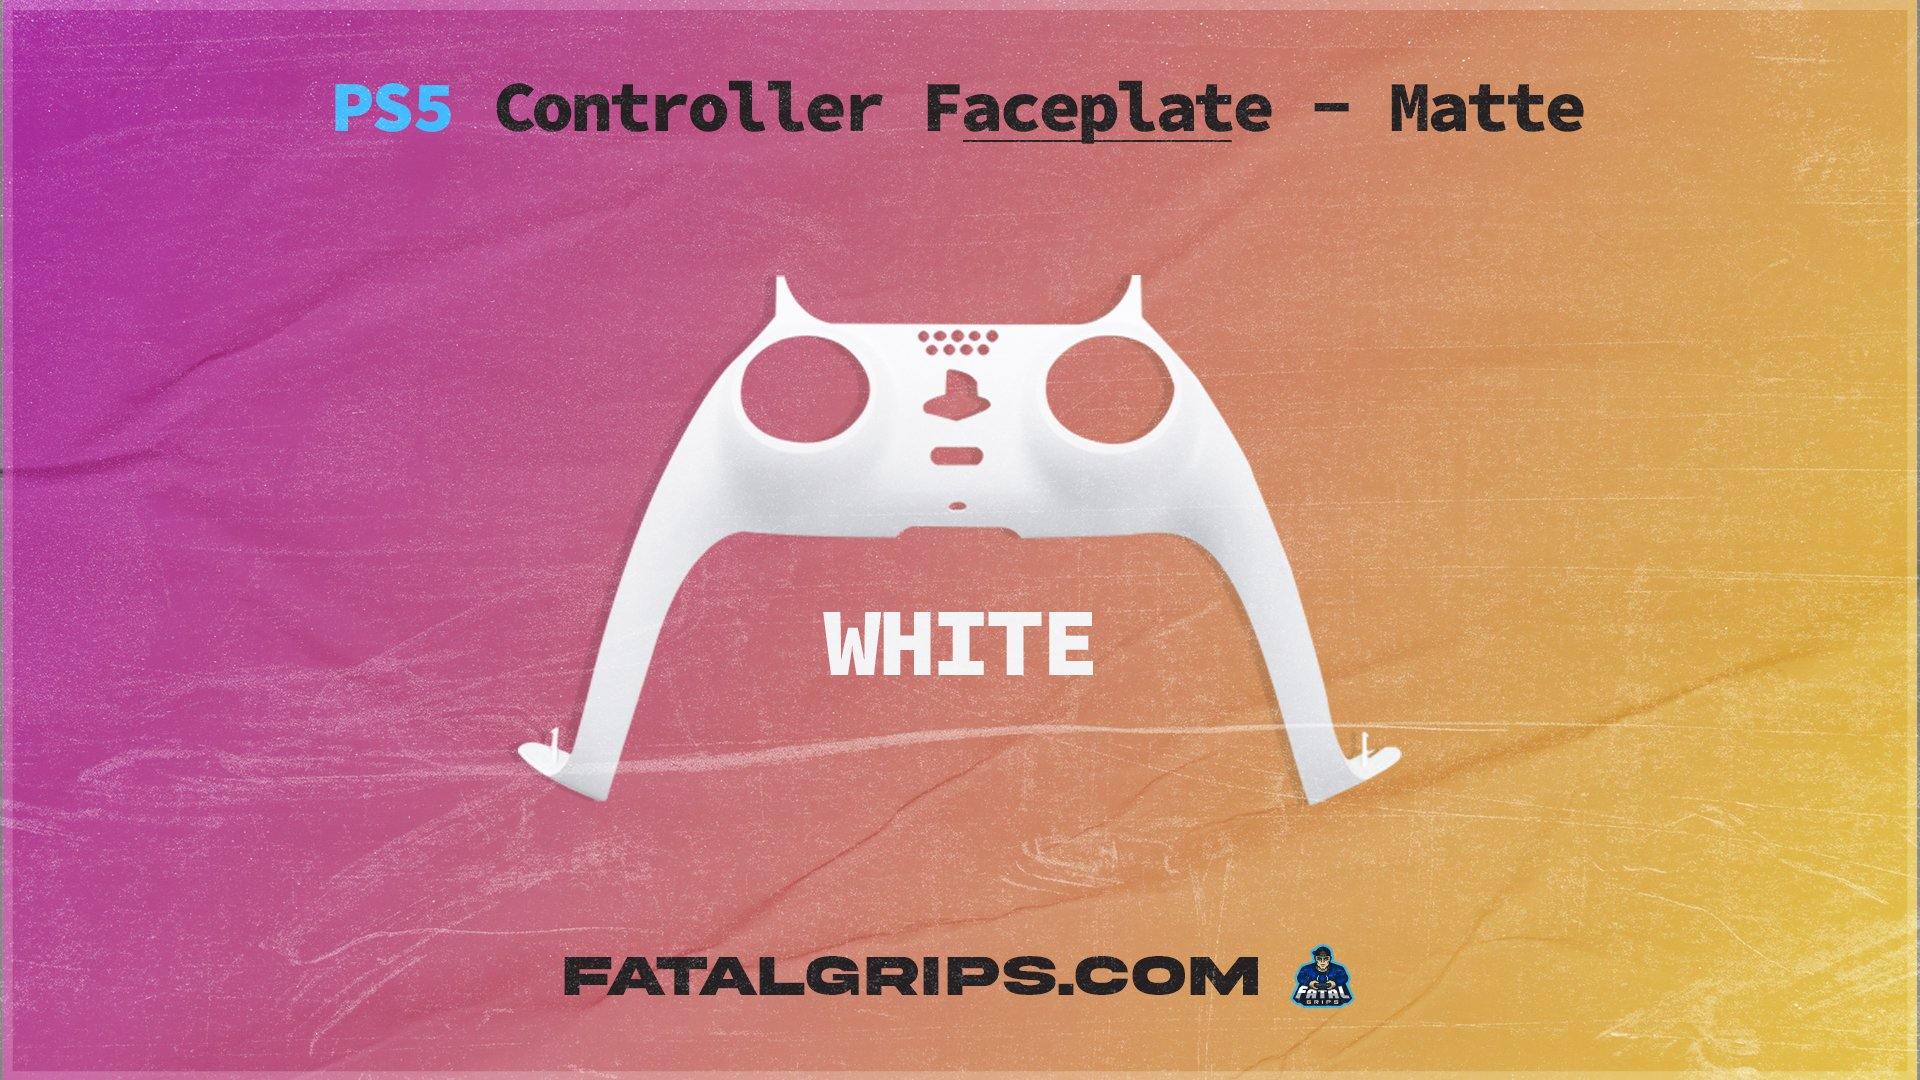 PS5 Controller Faceplate – Matte - Fatal Grips